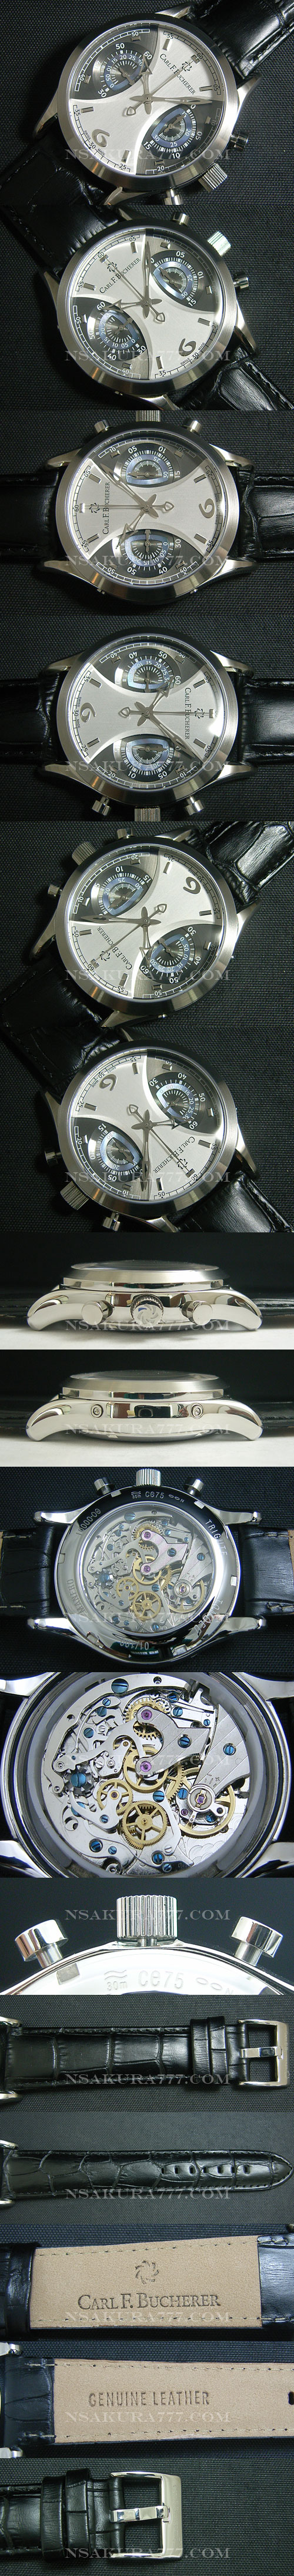 レプリカ時計カール F. ブヘラ Manero MonoGraph 手巻きピラーホイール搭載 - ウインドウを閉じる